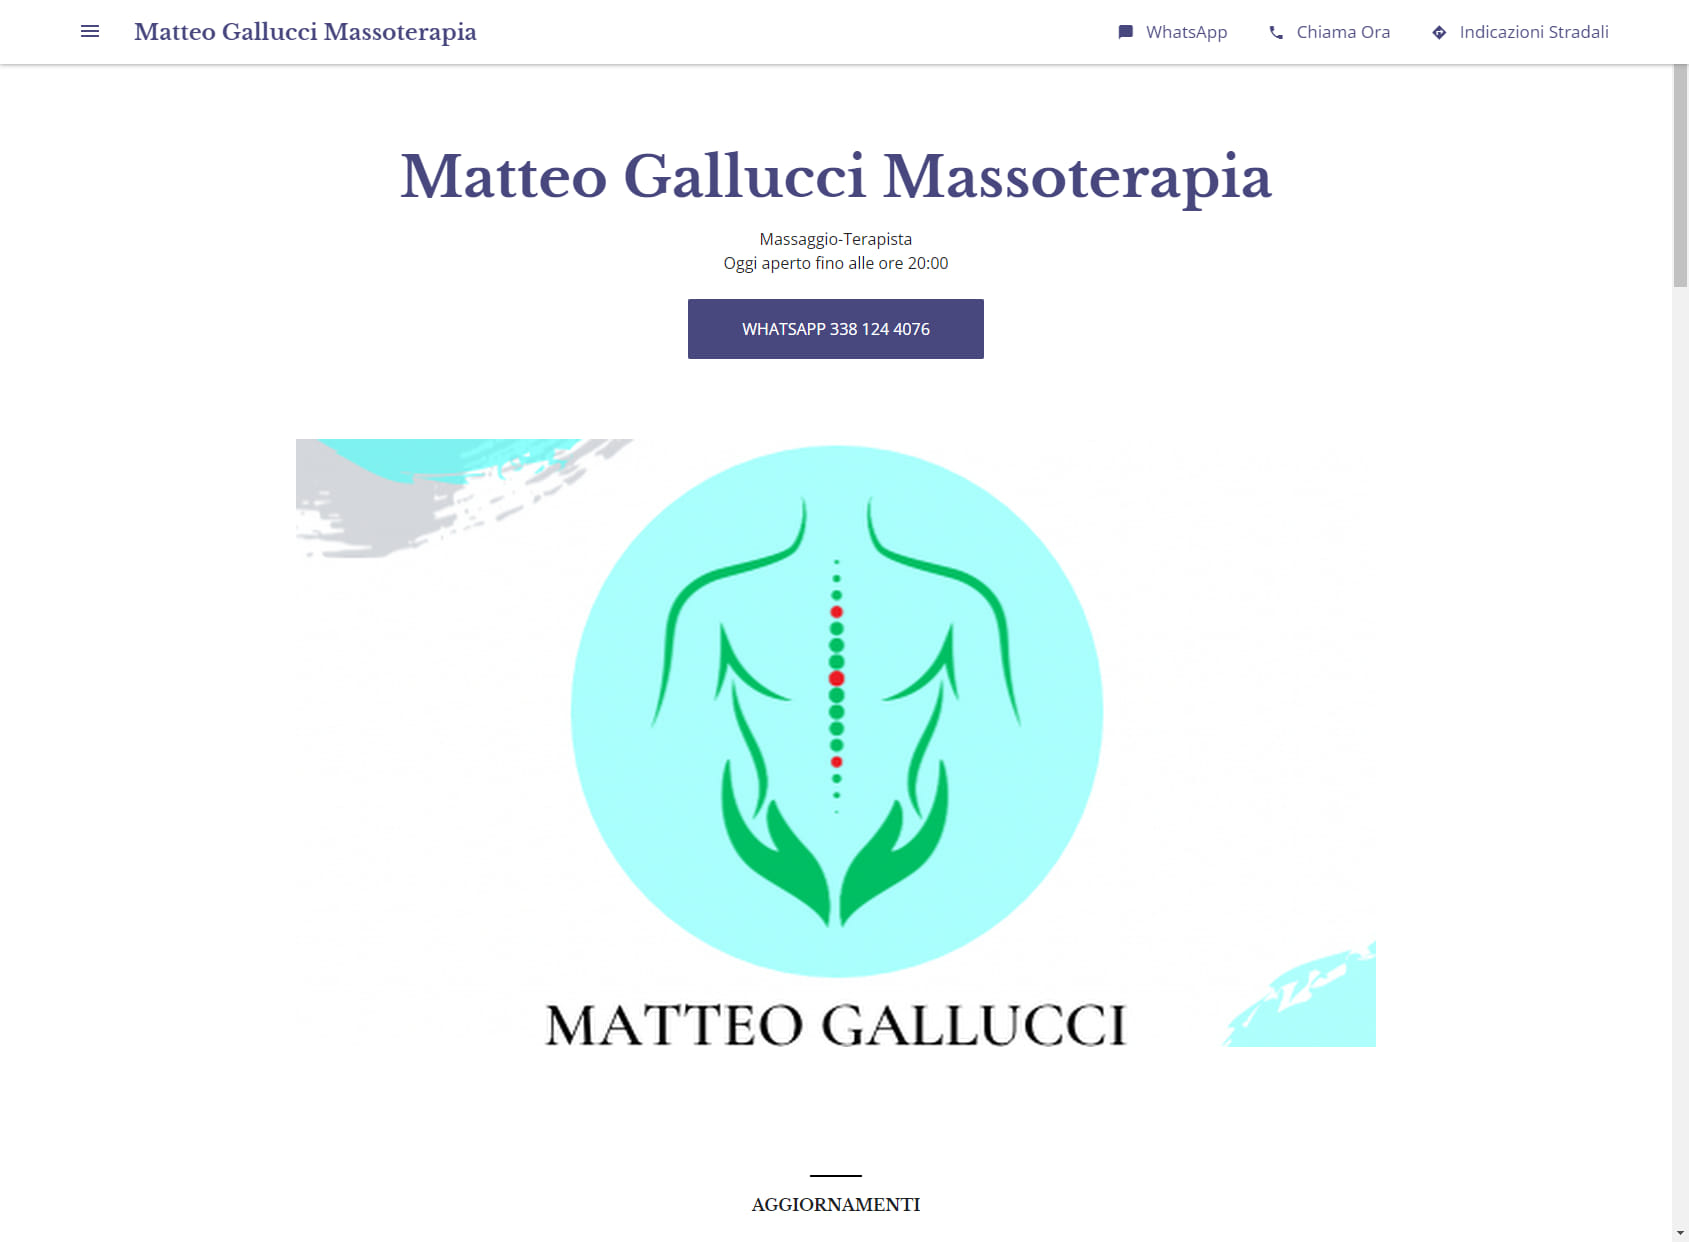 Matteo Gallucci Massoterapia